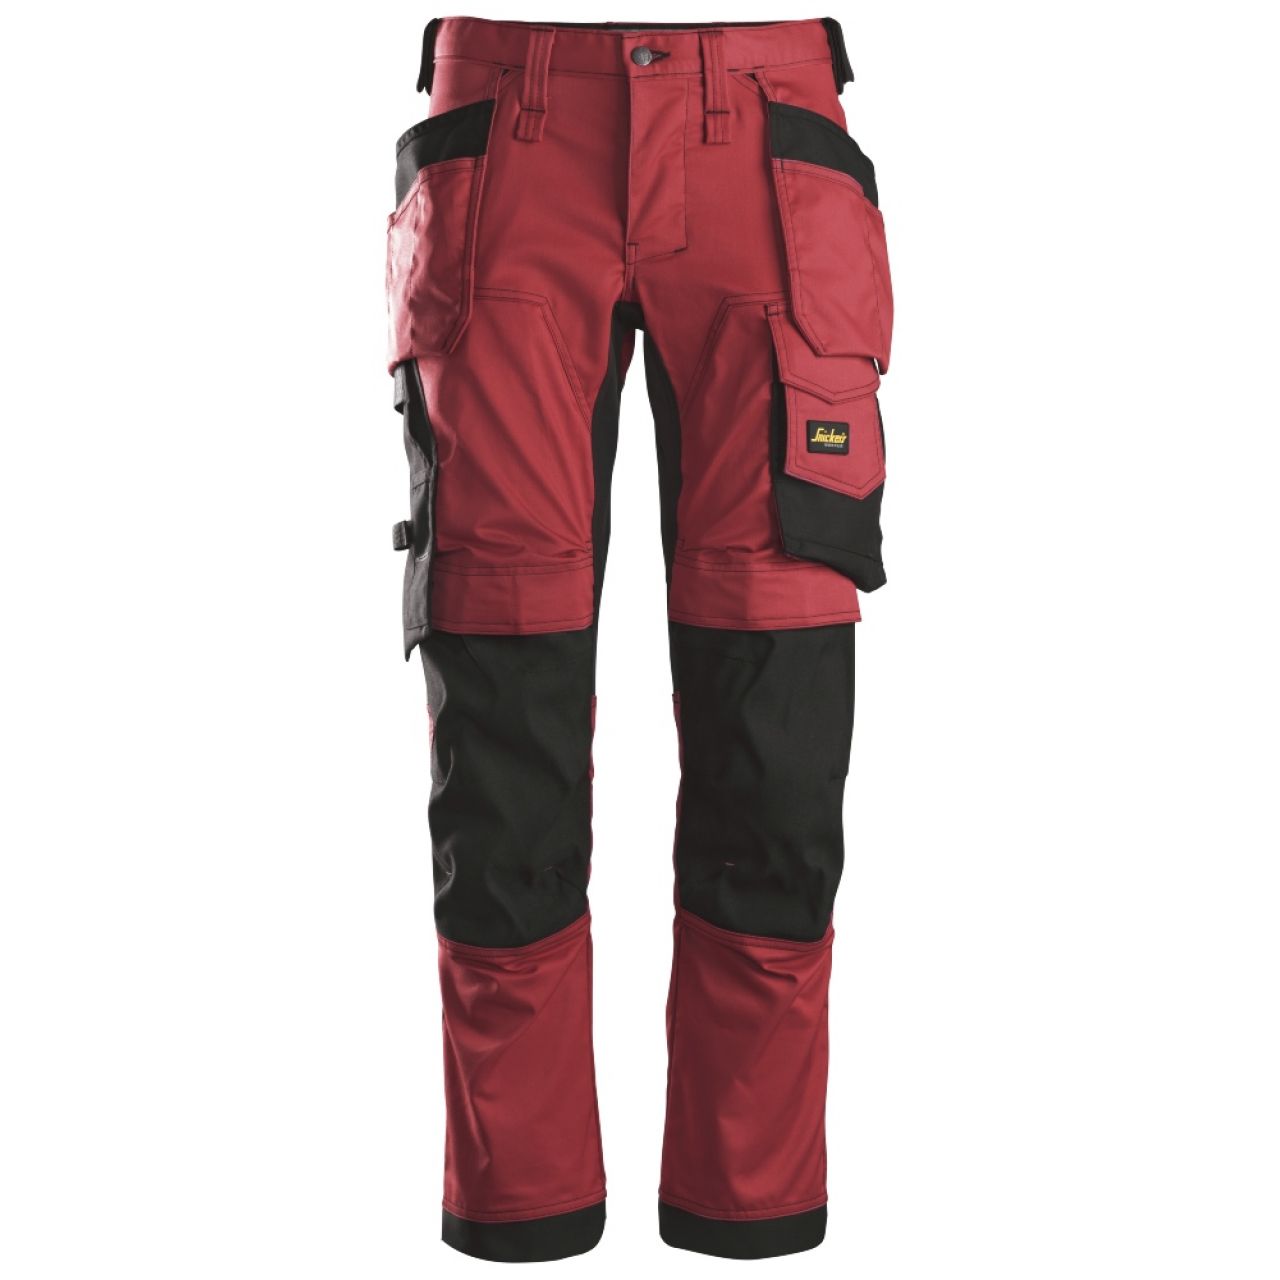 6241 Pantalones largos de trabajo elásticos con bolsillos flotantes AllroundWork rojo-negro talla 92